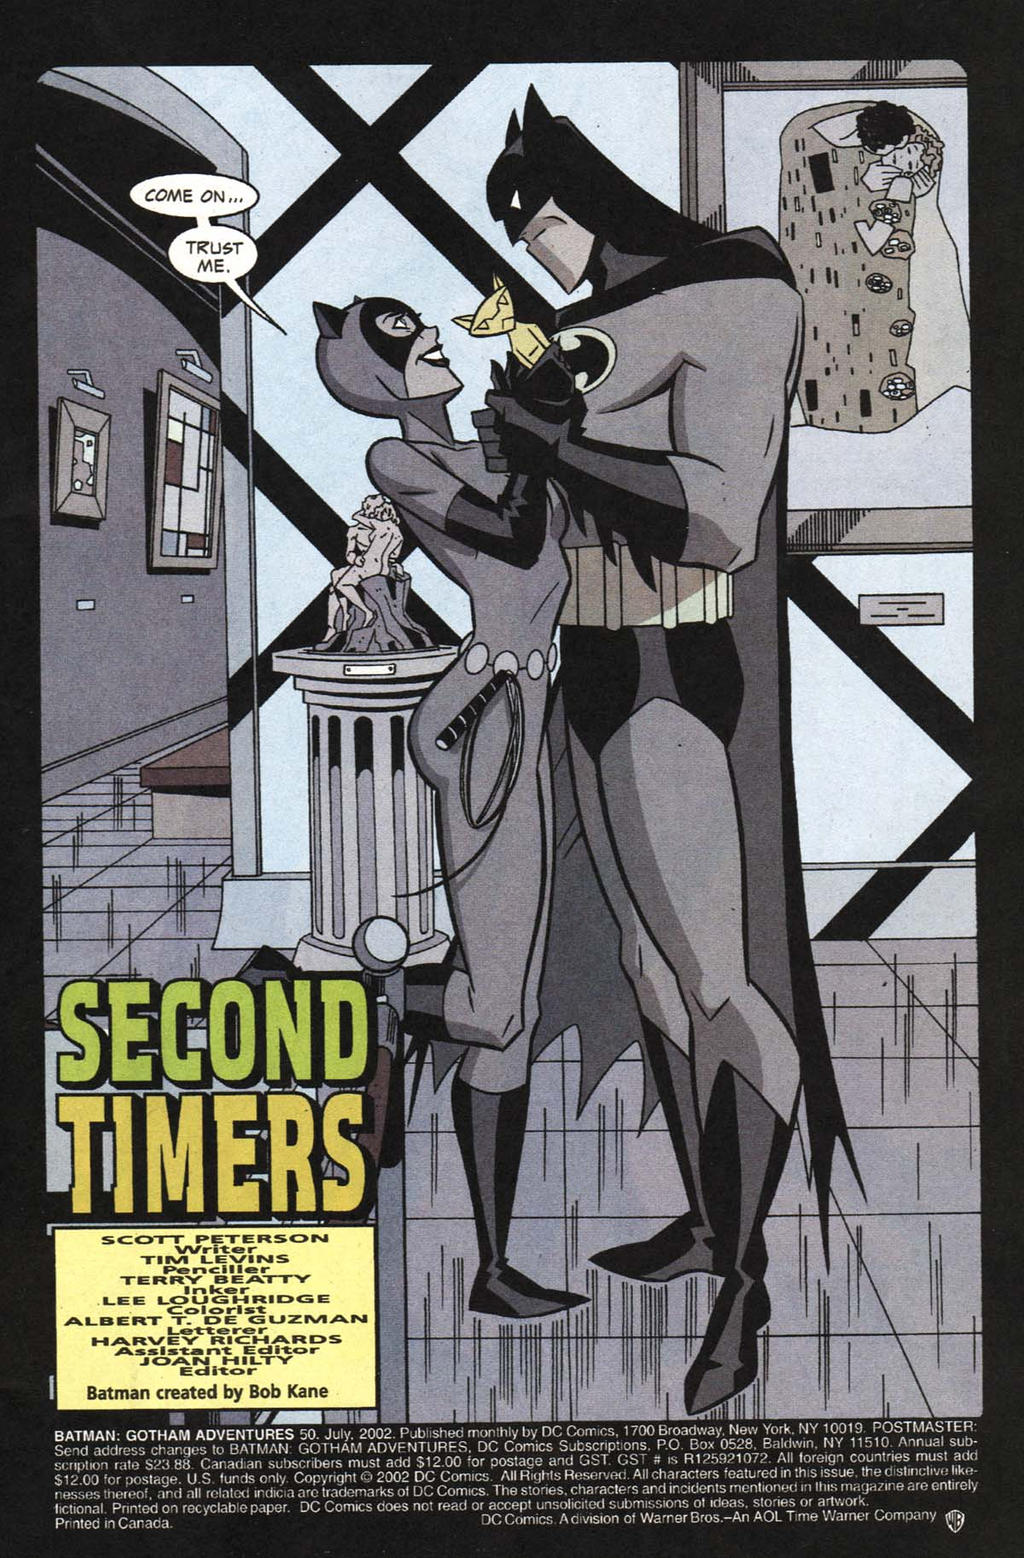 Batman: Gotham Adventures #50 - 01 by TimLevins on DeviantArt